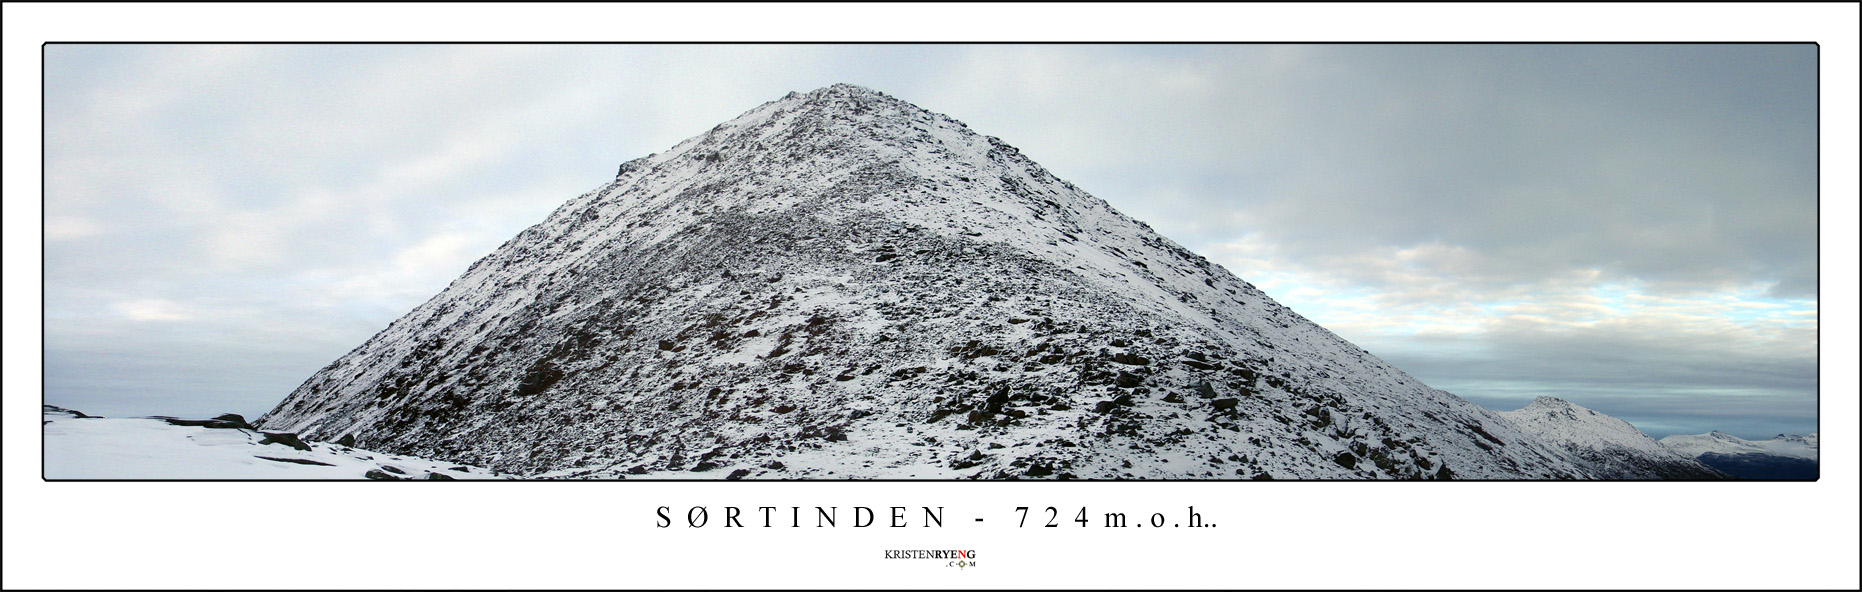 Panorama--Sortinden2.jpg - Utsikt mot Sørtinden (724 moh). Her med oversikt over siste ryggen opp mot toppen.